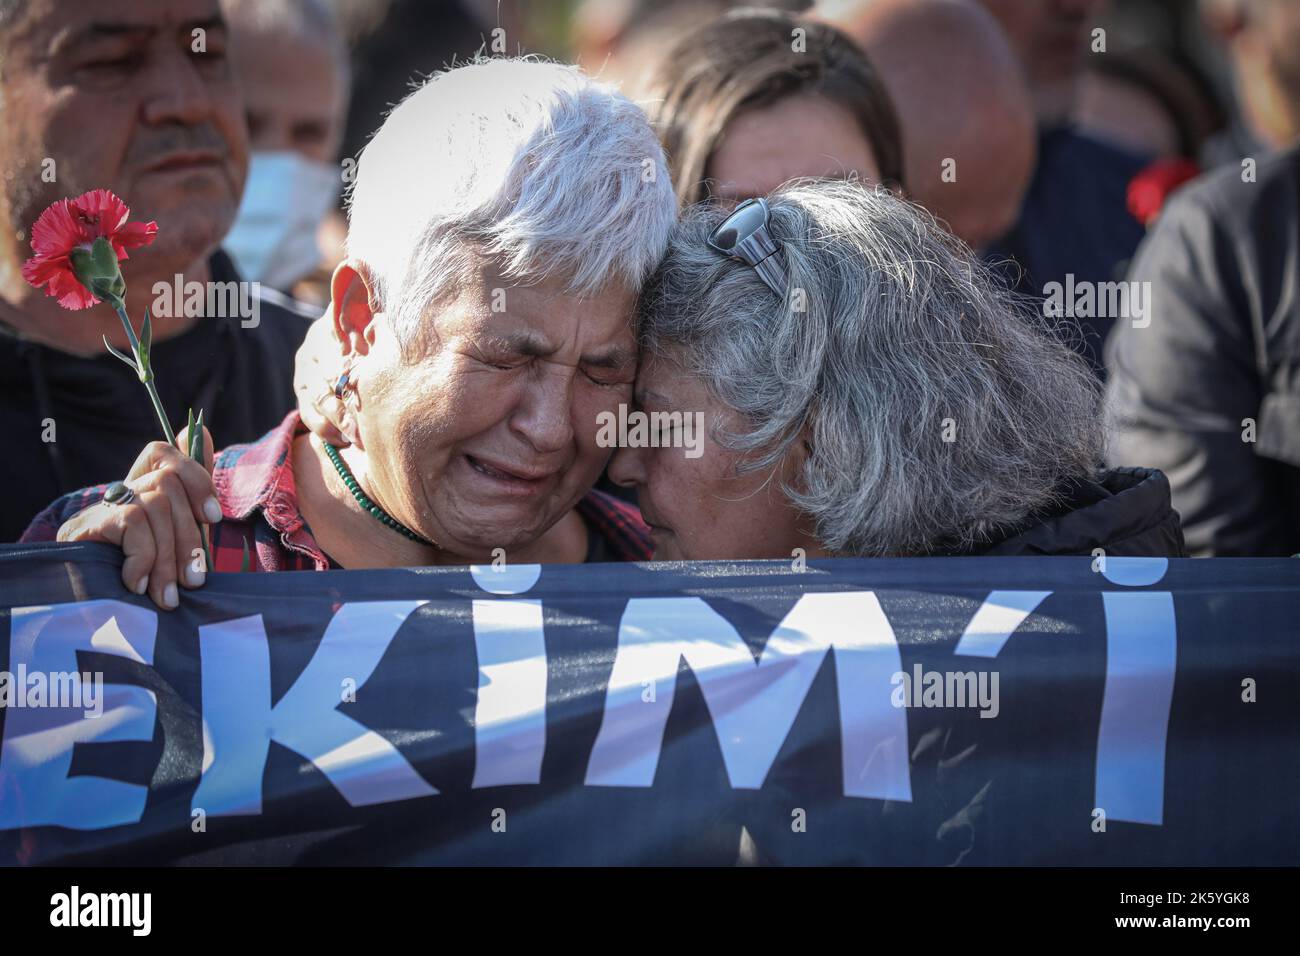 Deux femmes pleurent lors de la commémoration du septième anniversaire des attentats-suicides à la bombe de 2015, à Ankara. Septième anniversaire des attentats-suicides à deux lits, au cours desquels plus de 100 personnes ont été tuées (10 octobre 2015), à Ankara, sur 10 octobre 2020. Les kamikazes soupçonnés d'être liés à l'État islamique se sont fait exploser dans une foule de militants pro-kurdes pour la paix qui prévoient d'organiser un rassemblement devant la gare centrale d'Ankara, avec un nombre de morts de 103 personnes. L'attaque l'attaque terroriste la plus meurtrière de l'histoire turque. La septième année du massacre, ceux qui ont perdu leur famille et ceux qui l'ont fait Banque D'Images